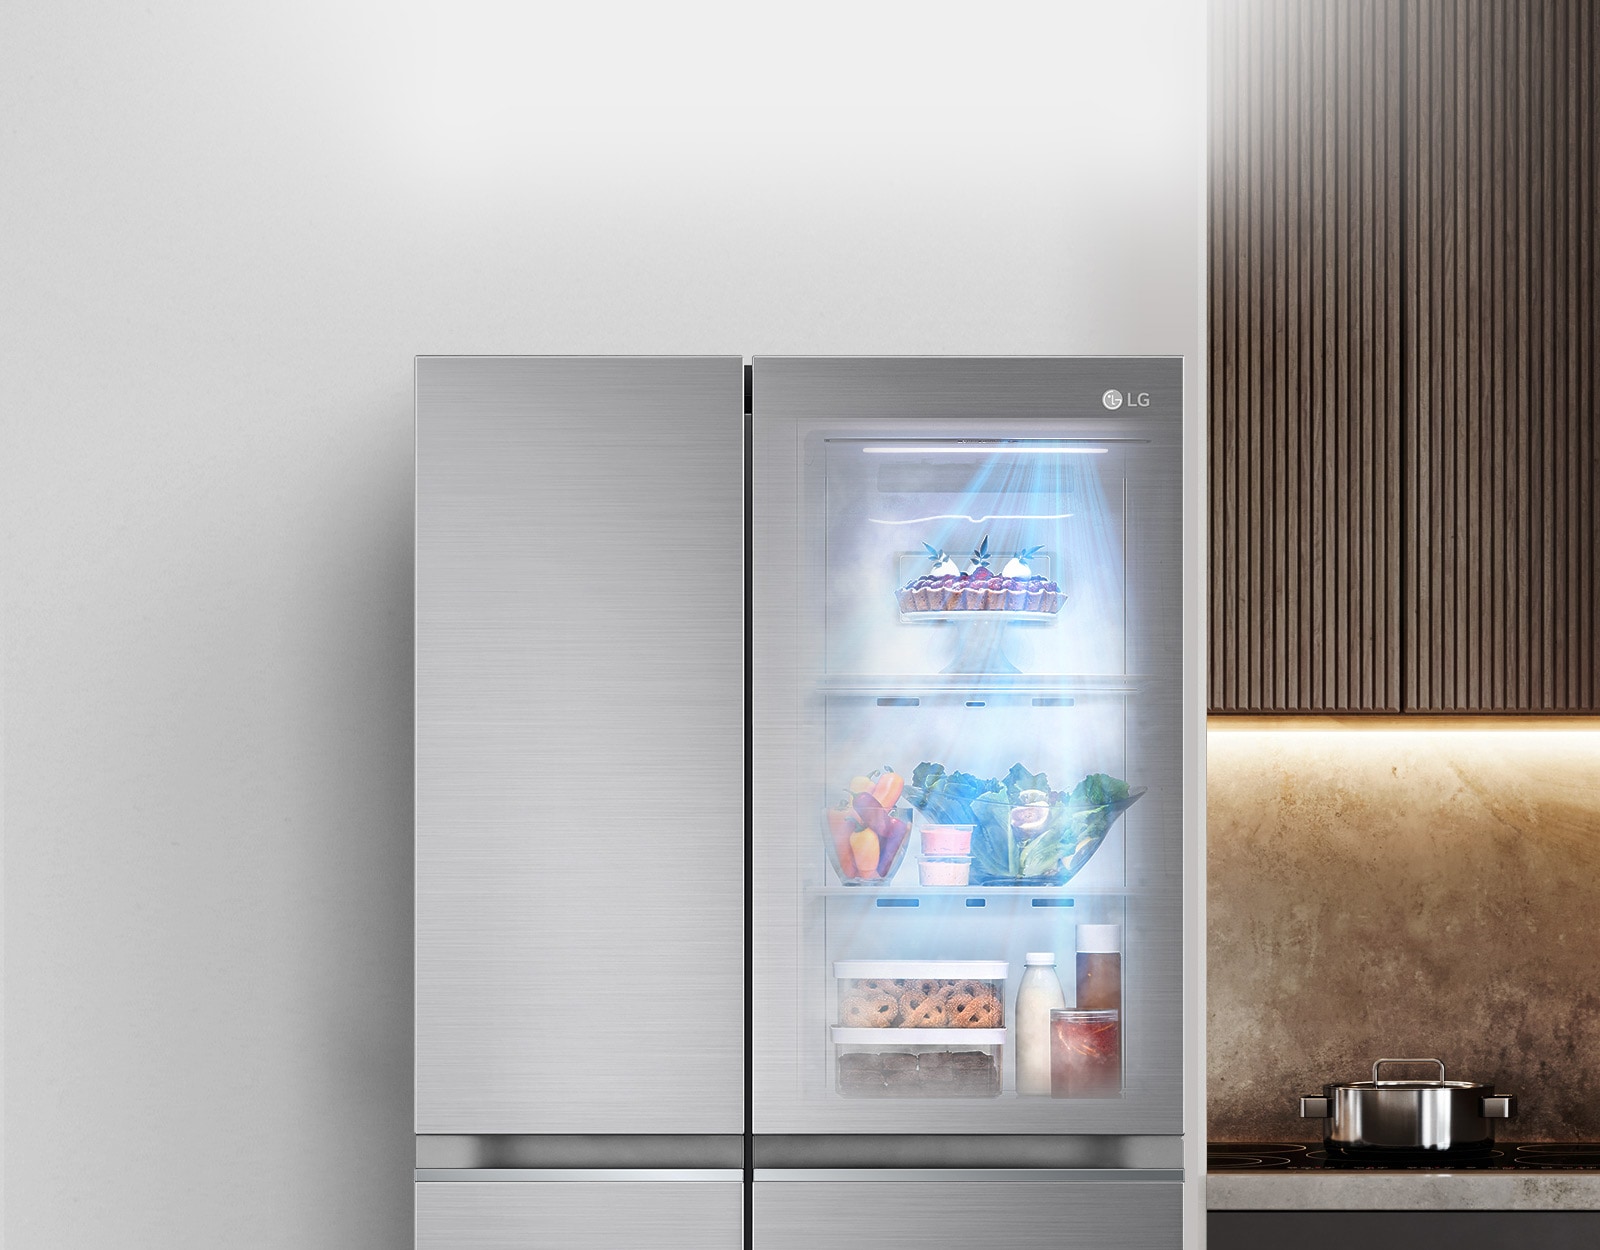 La vista frontal de un refrigerador InstaView negro con la luz encendida en el interior. El contenido del refrigerador se puede ver a través de la puerta InstaView. Los rayos de luz azules brillan sobre el contenido de la función DoorCooling.